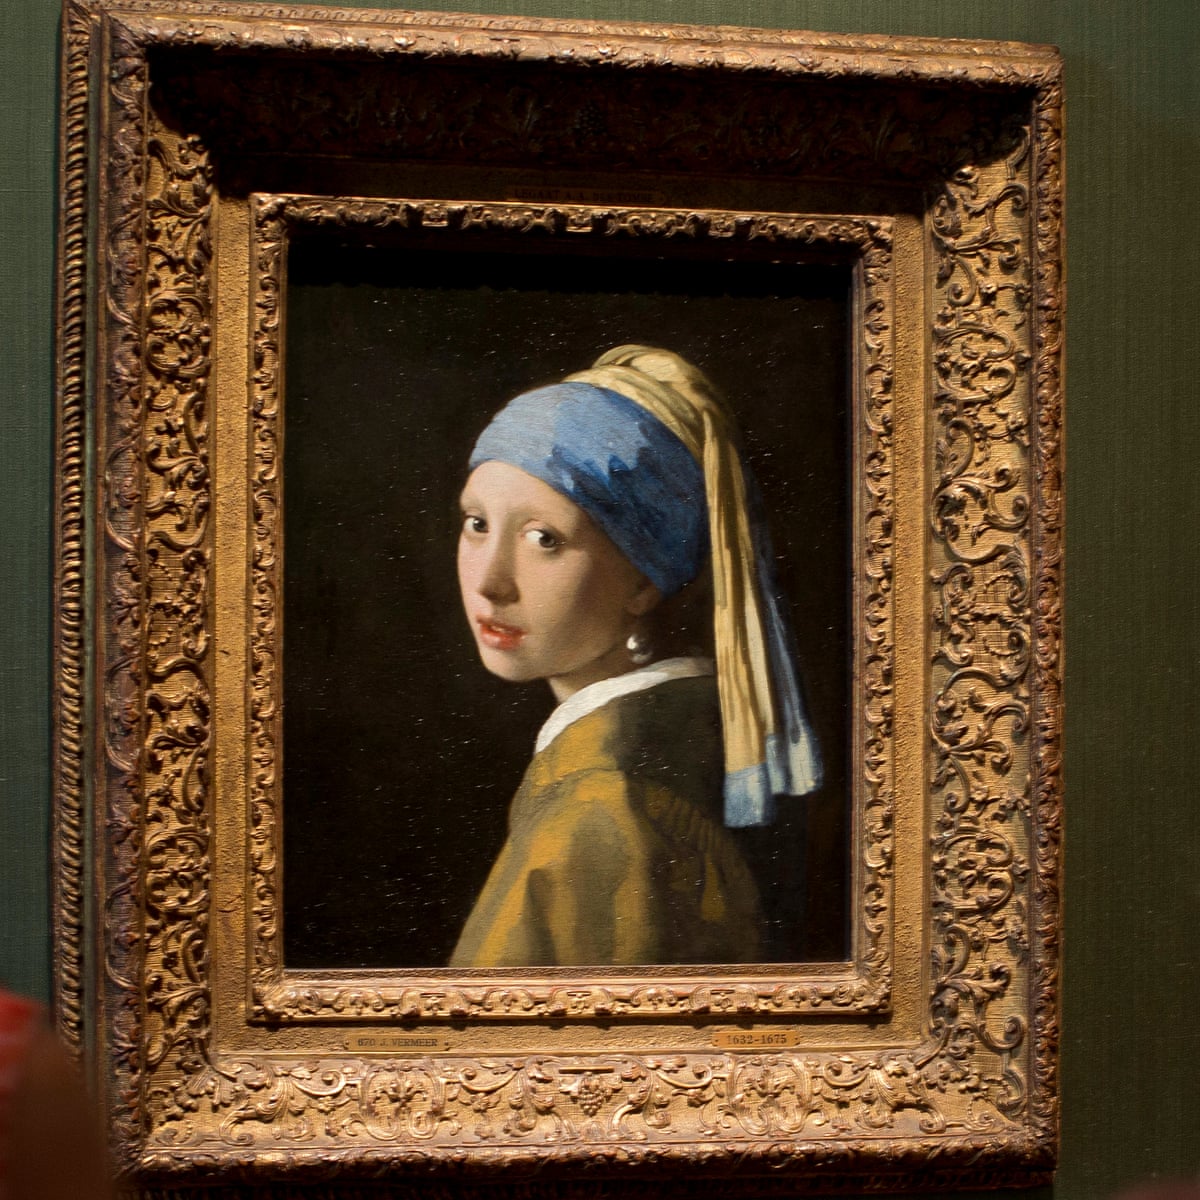 Vermeer paintings